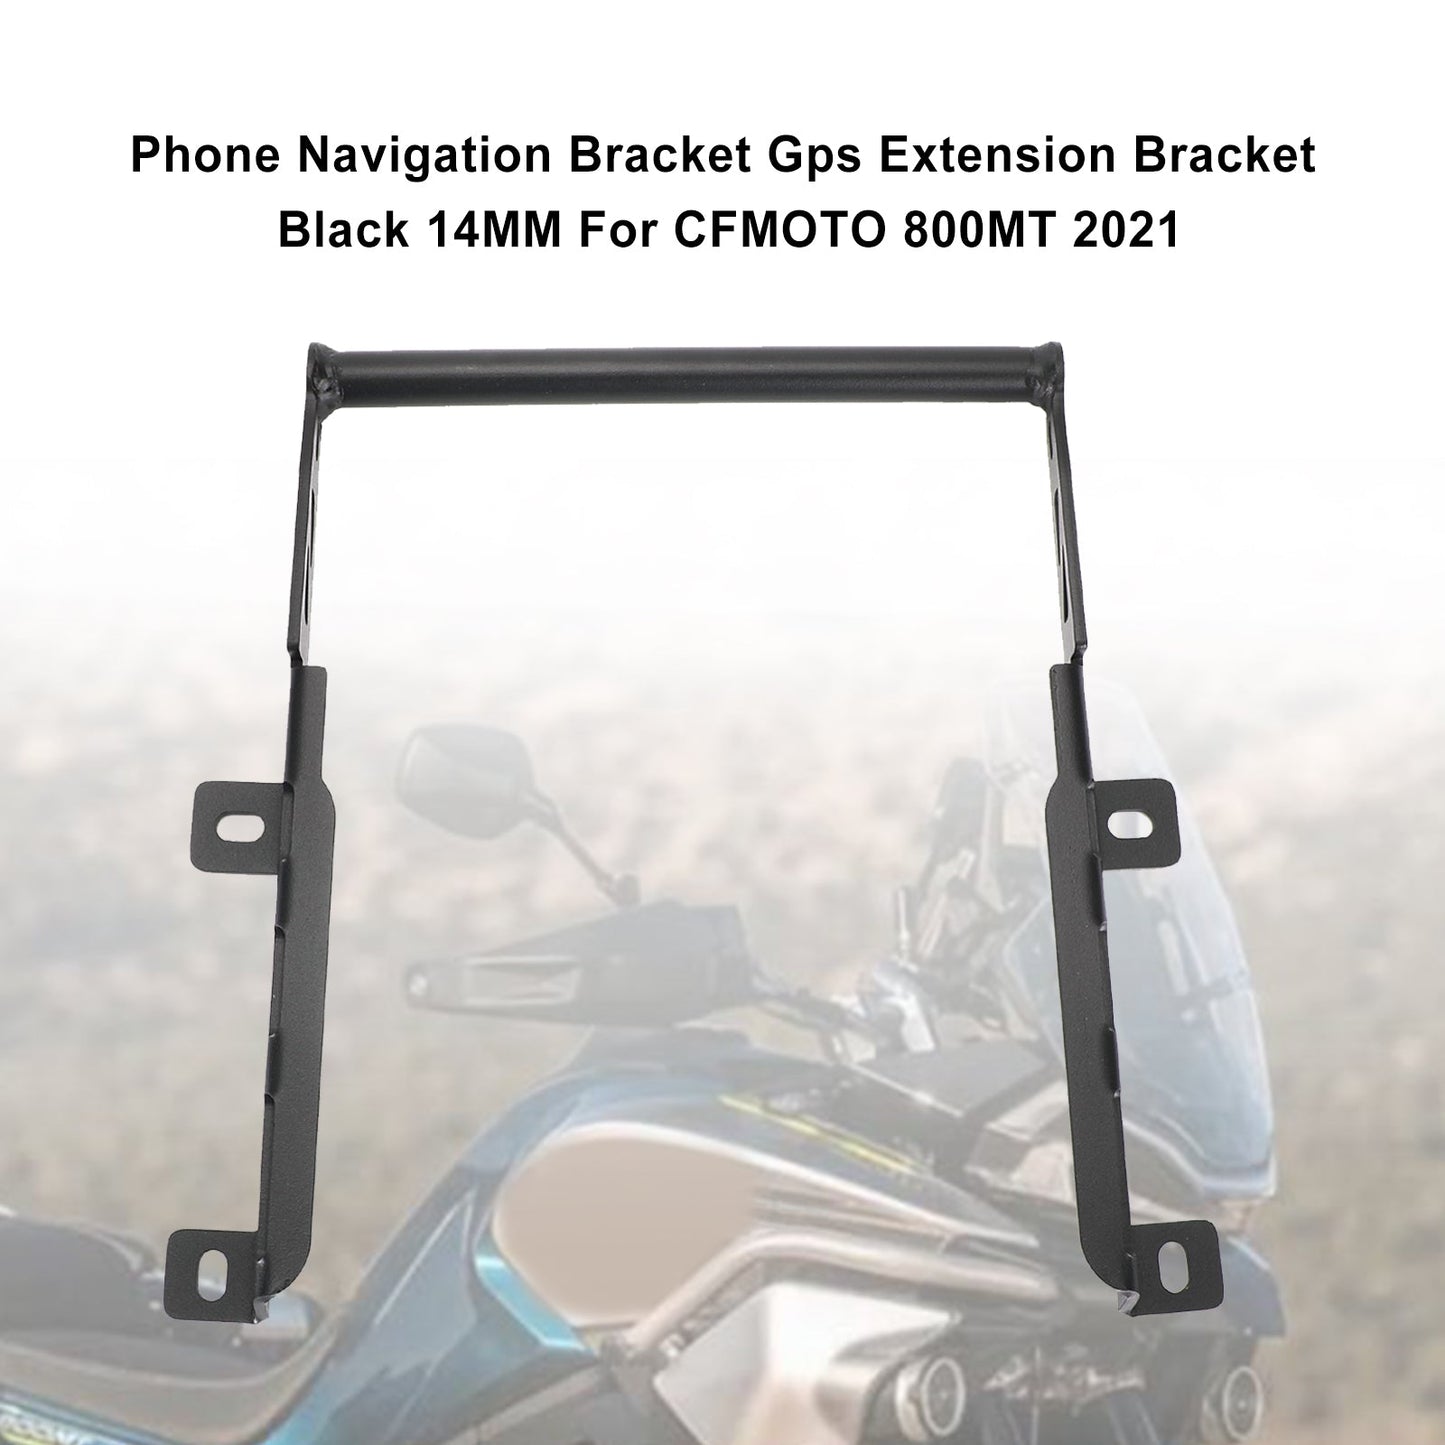 Phone Navigation Bracket Gps Extension Bracket Black 14Mm For Cfmoto 800Mt 2021